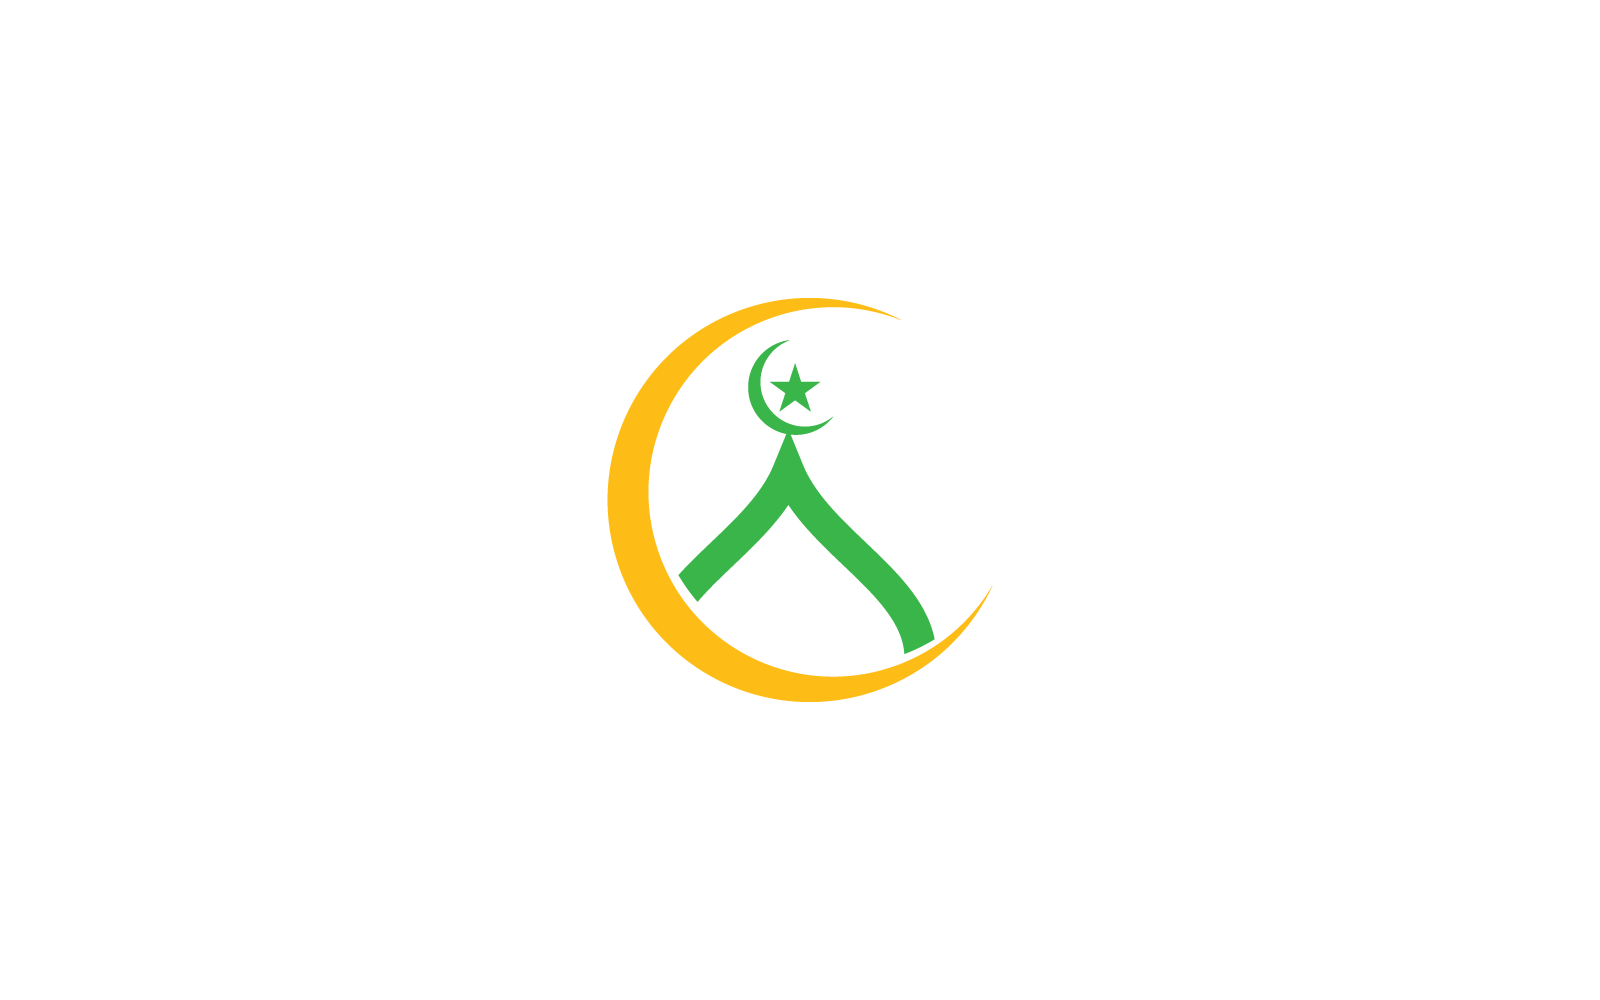 Islamic logo, Mosque icon vector flat design template